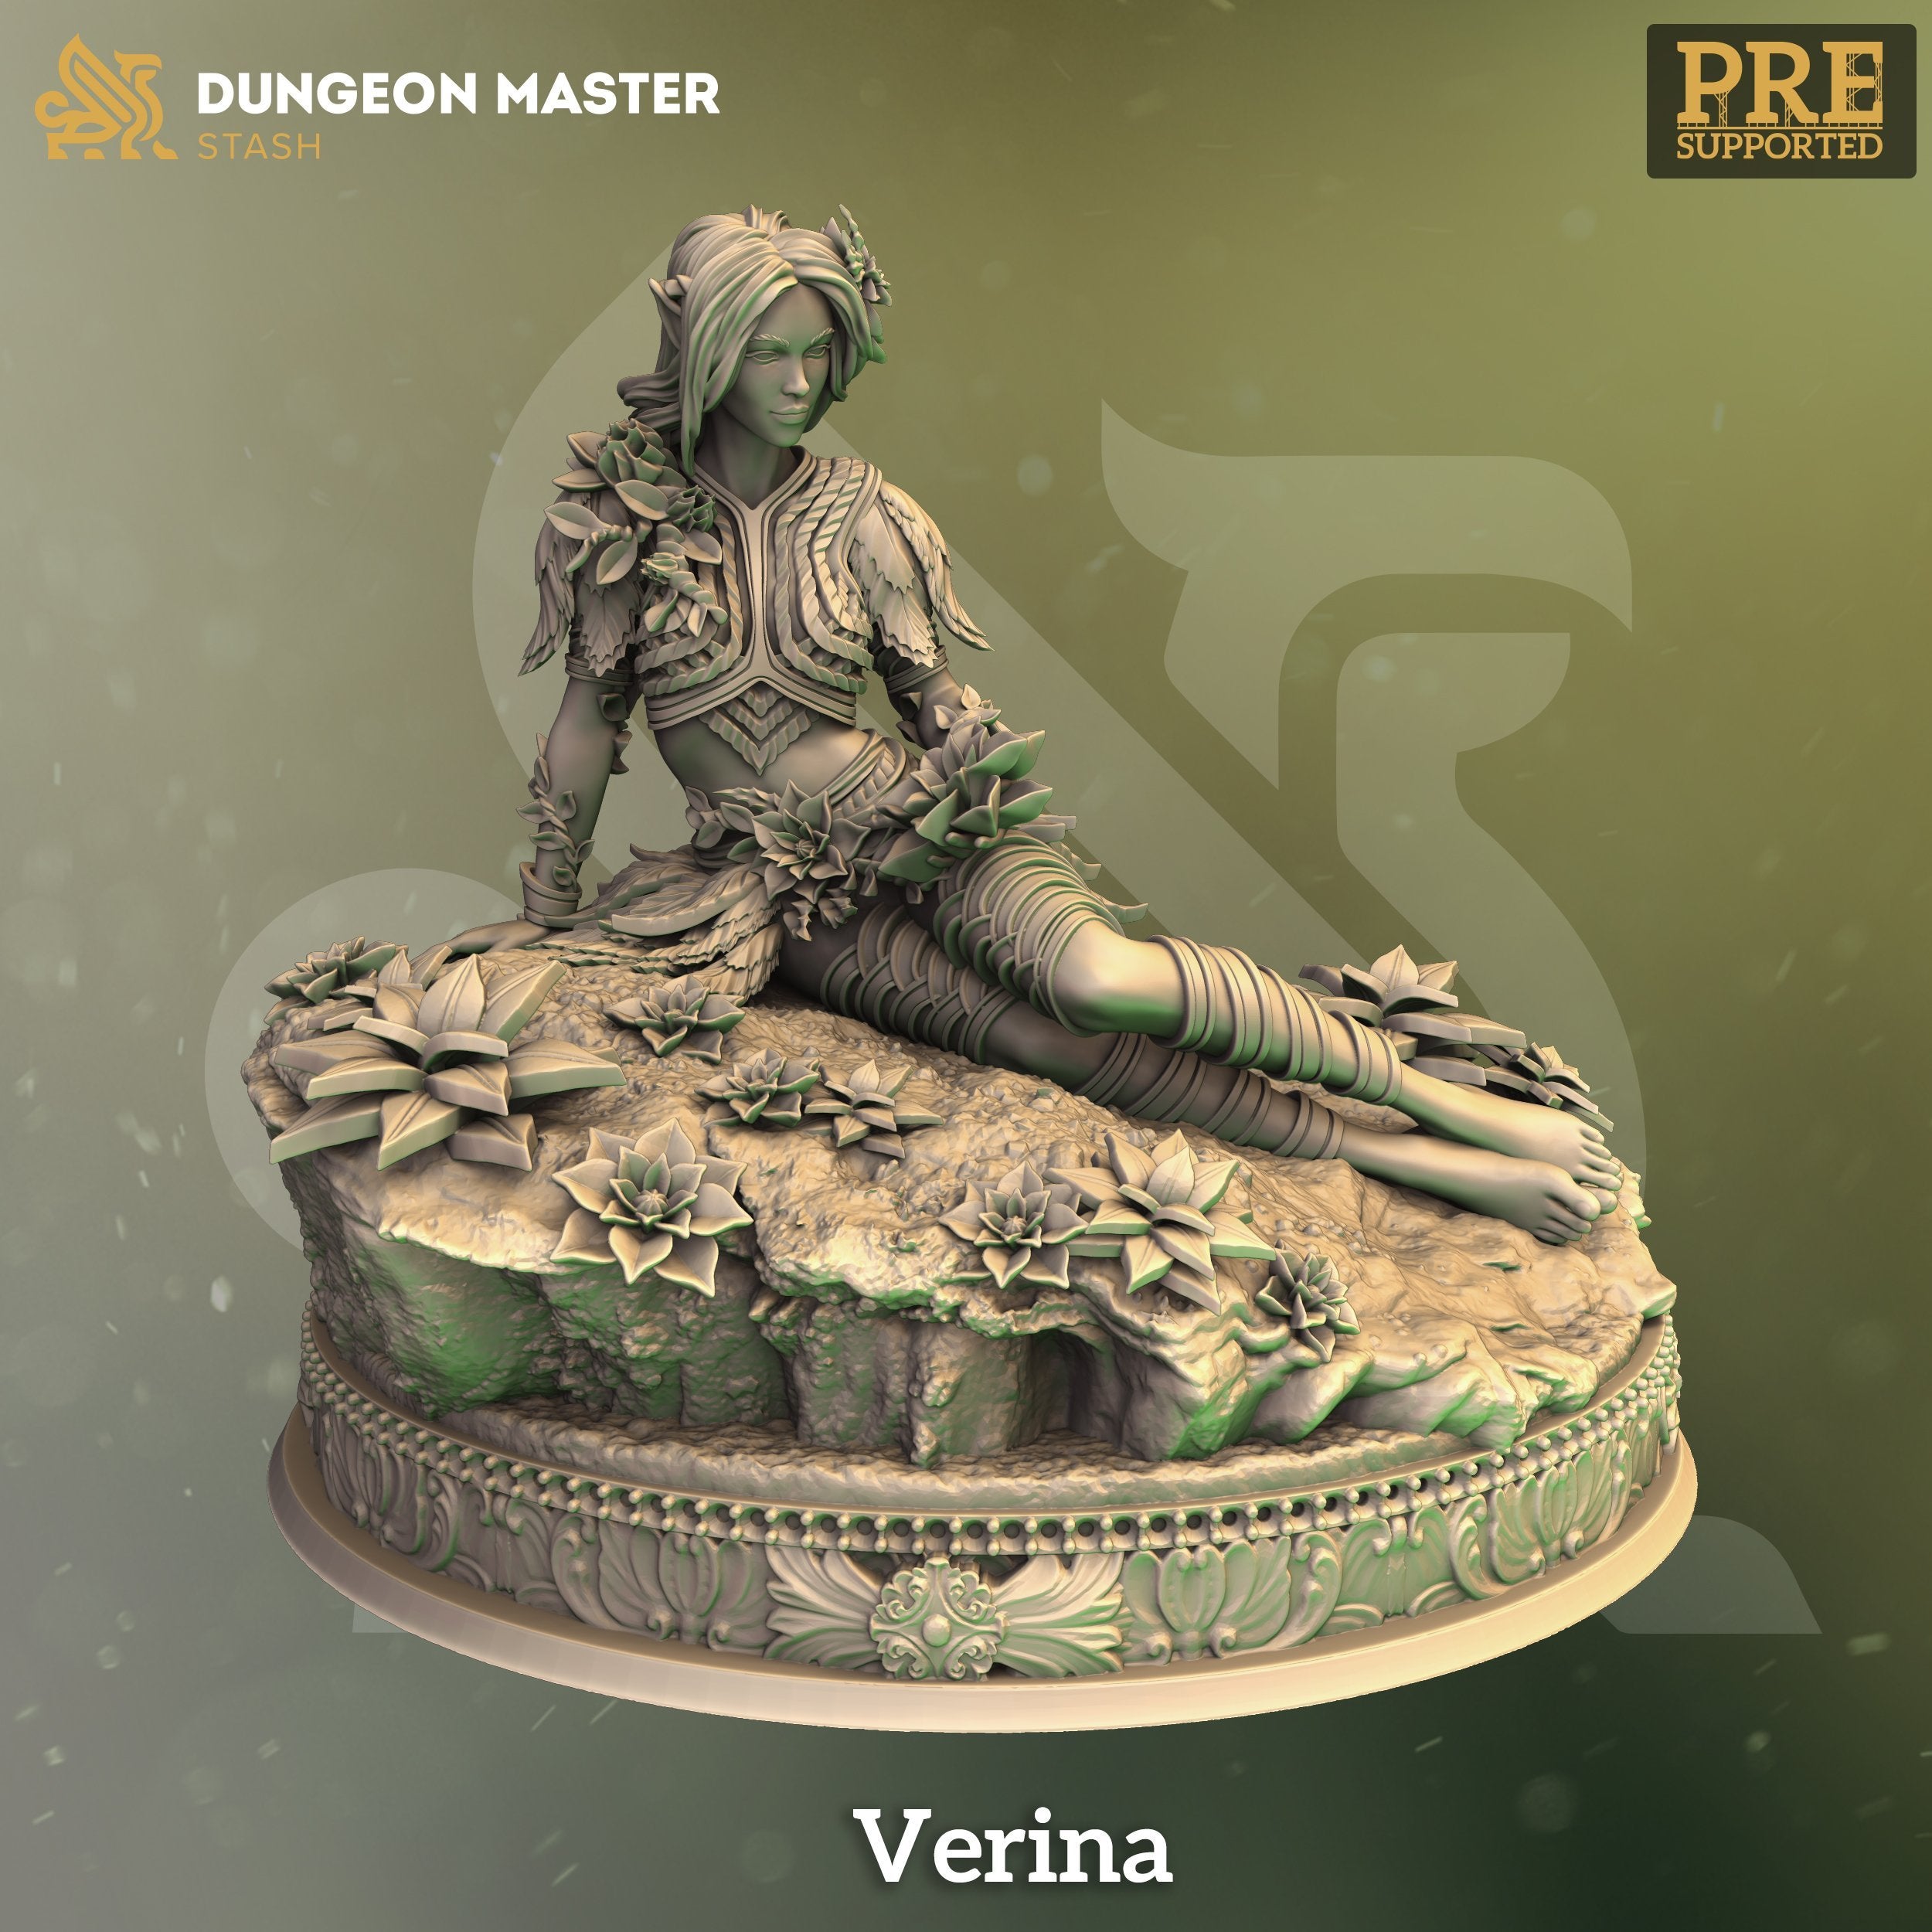 Verina - The Printable Dragon